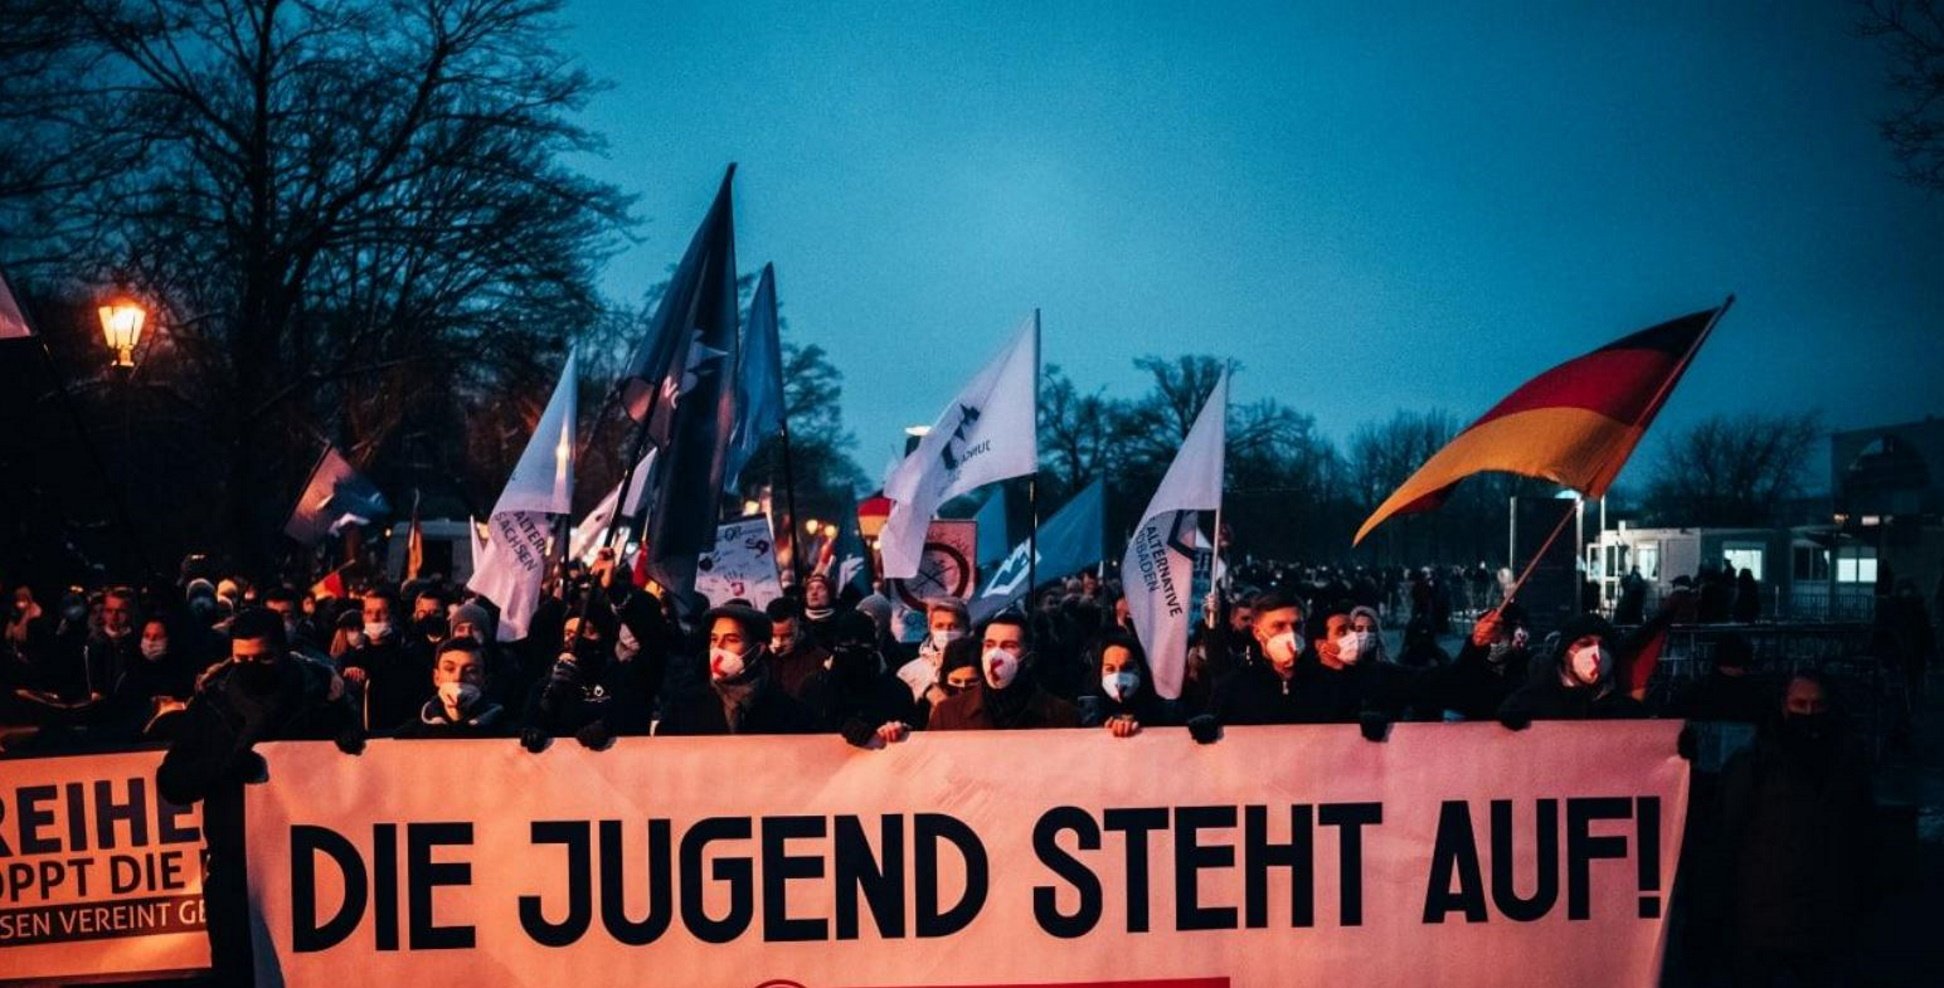 Alemanya debat prohibir el partit d'extrema dreta AdF pels seus plans autoritaris